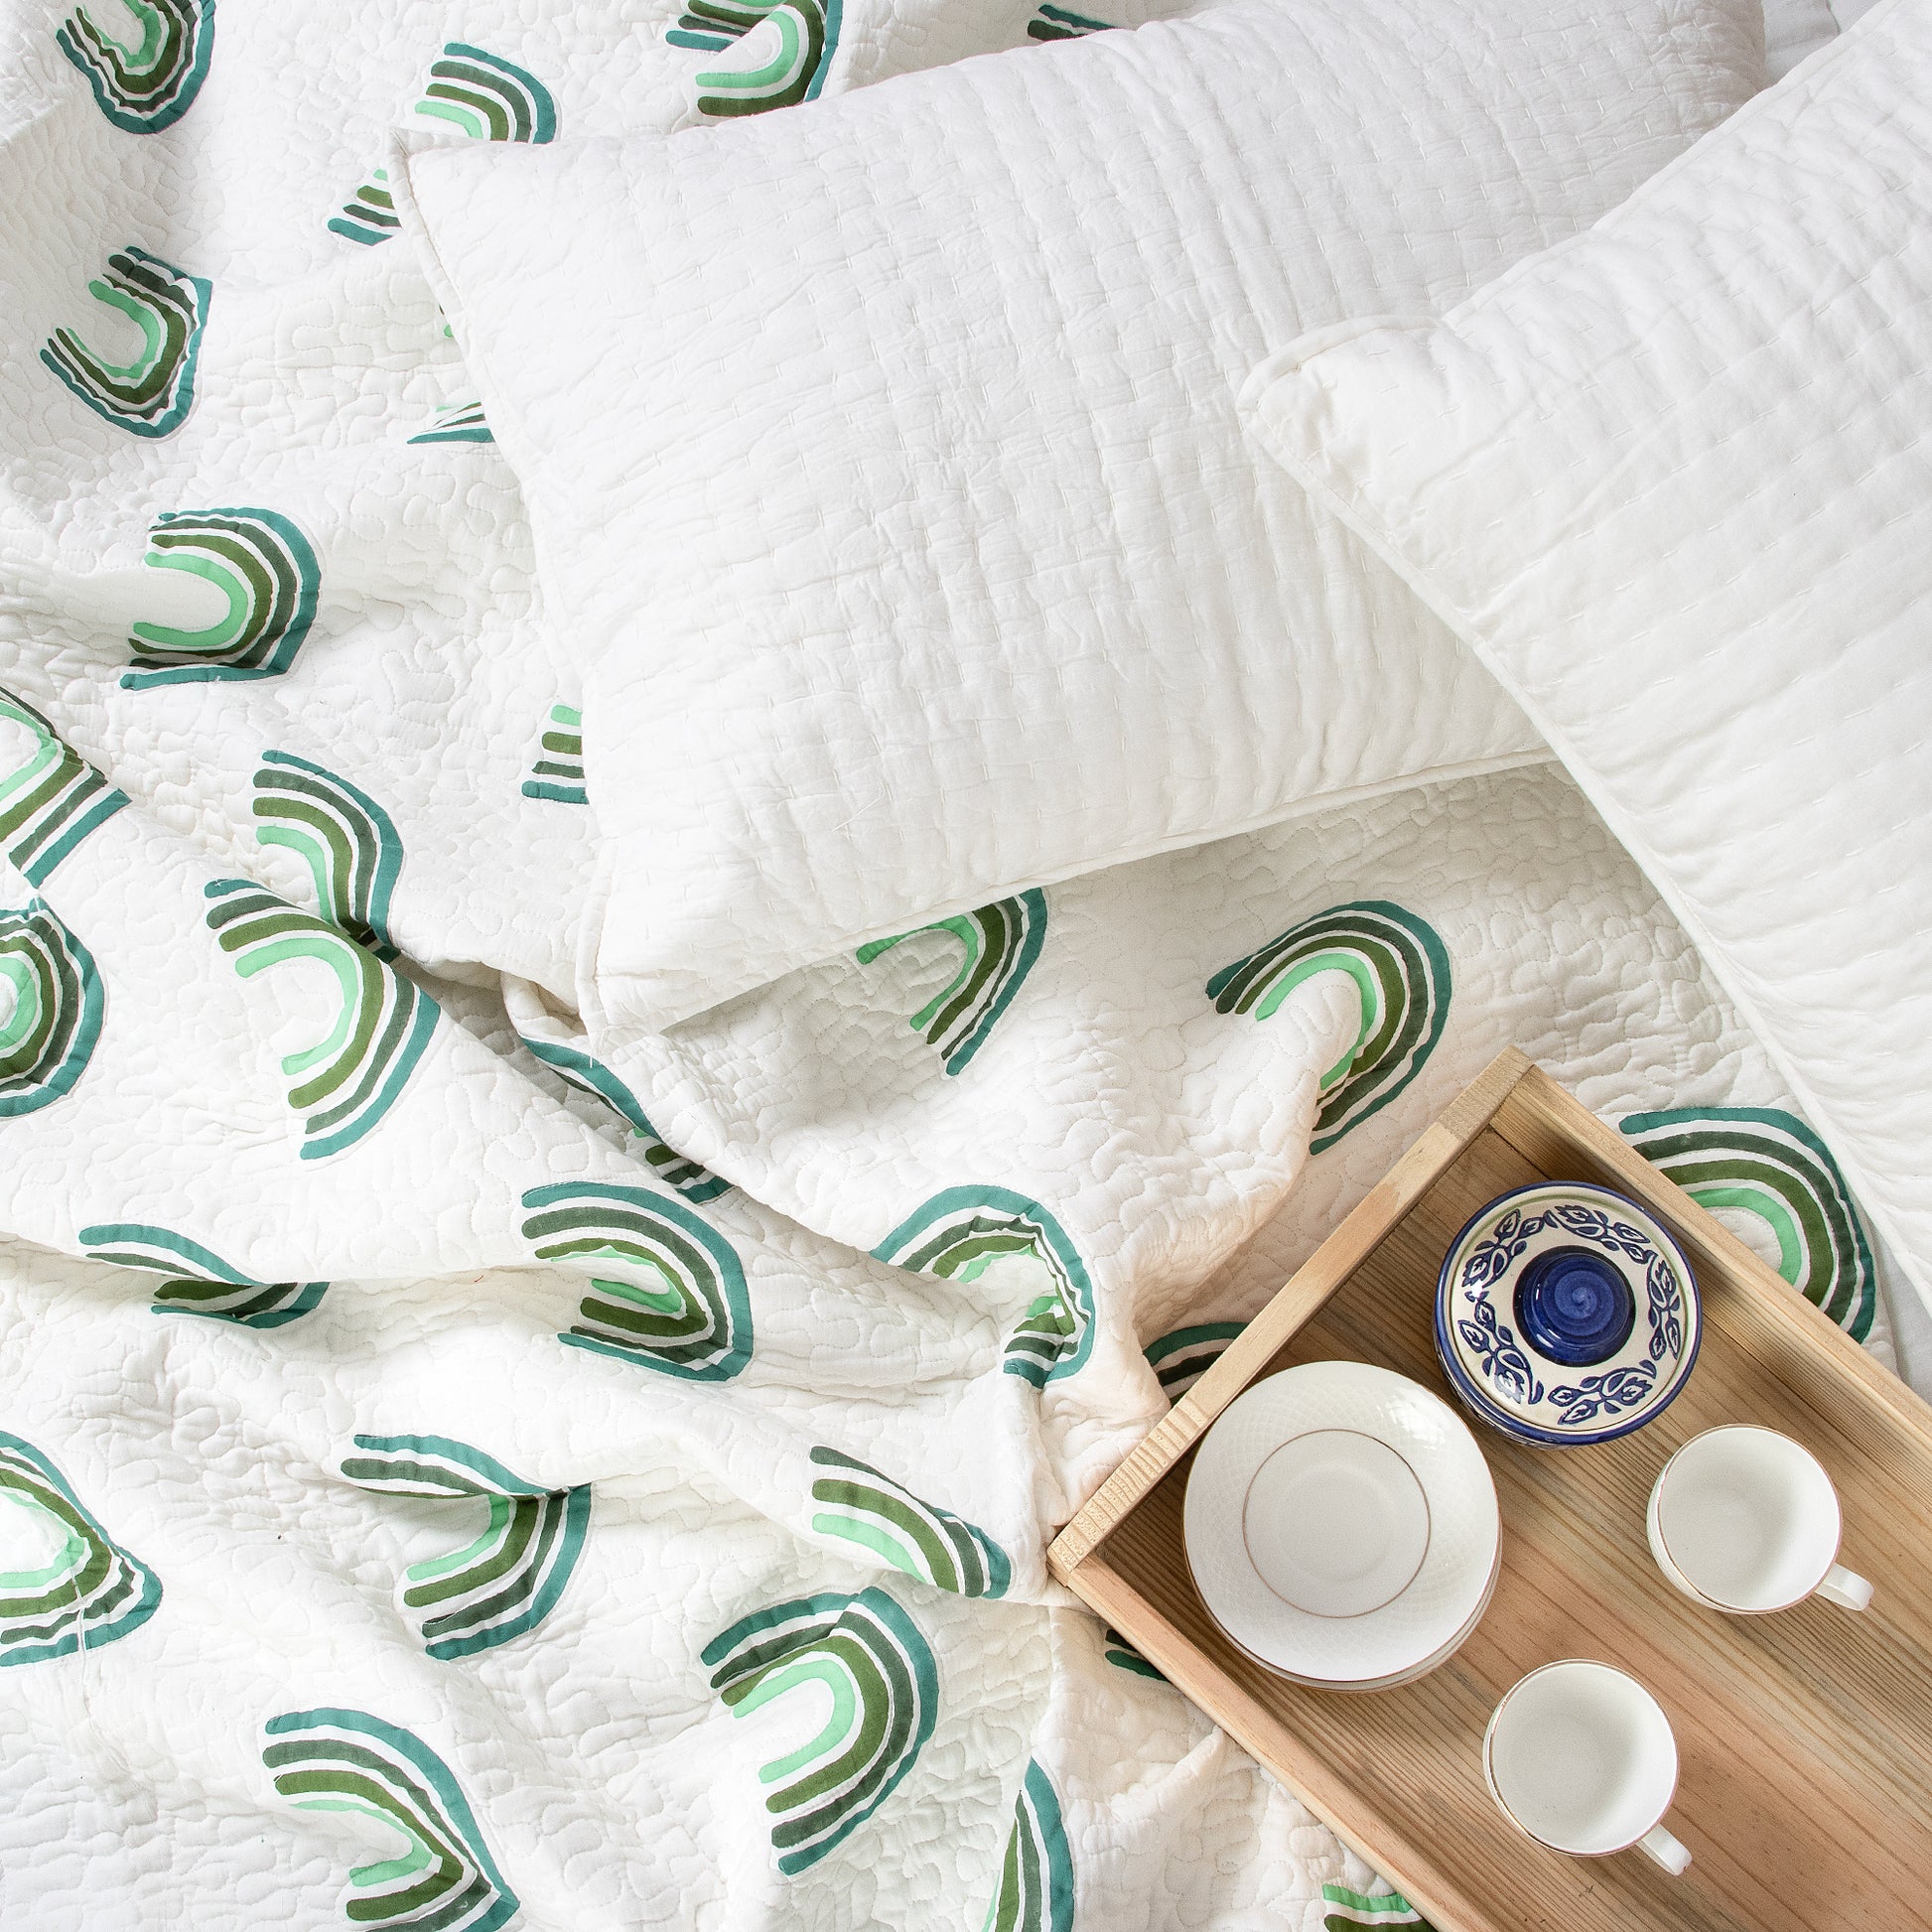 Sunrise Design Soft Cotton Machine Quilts Sets Online